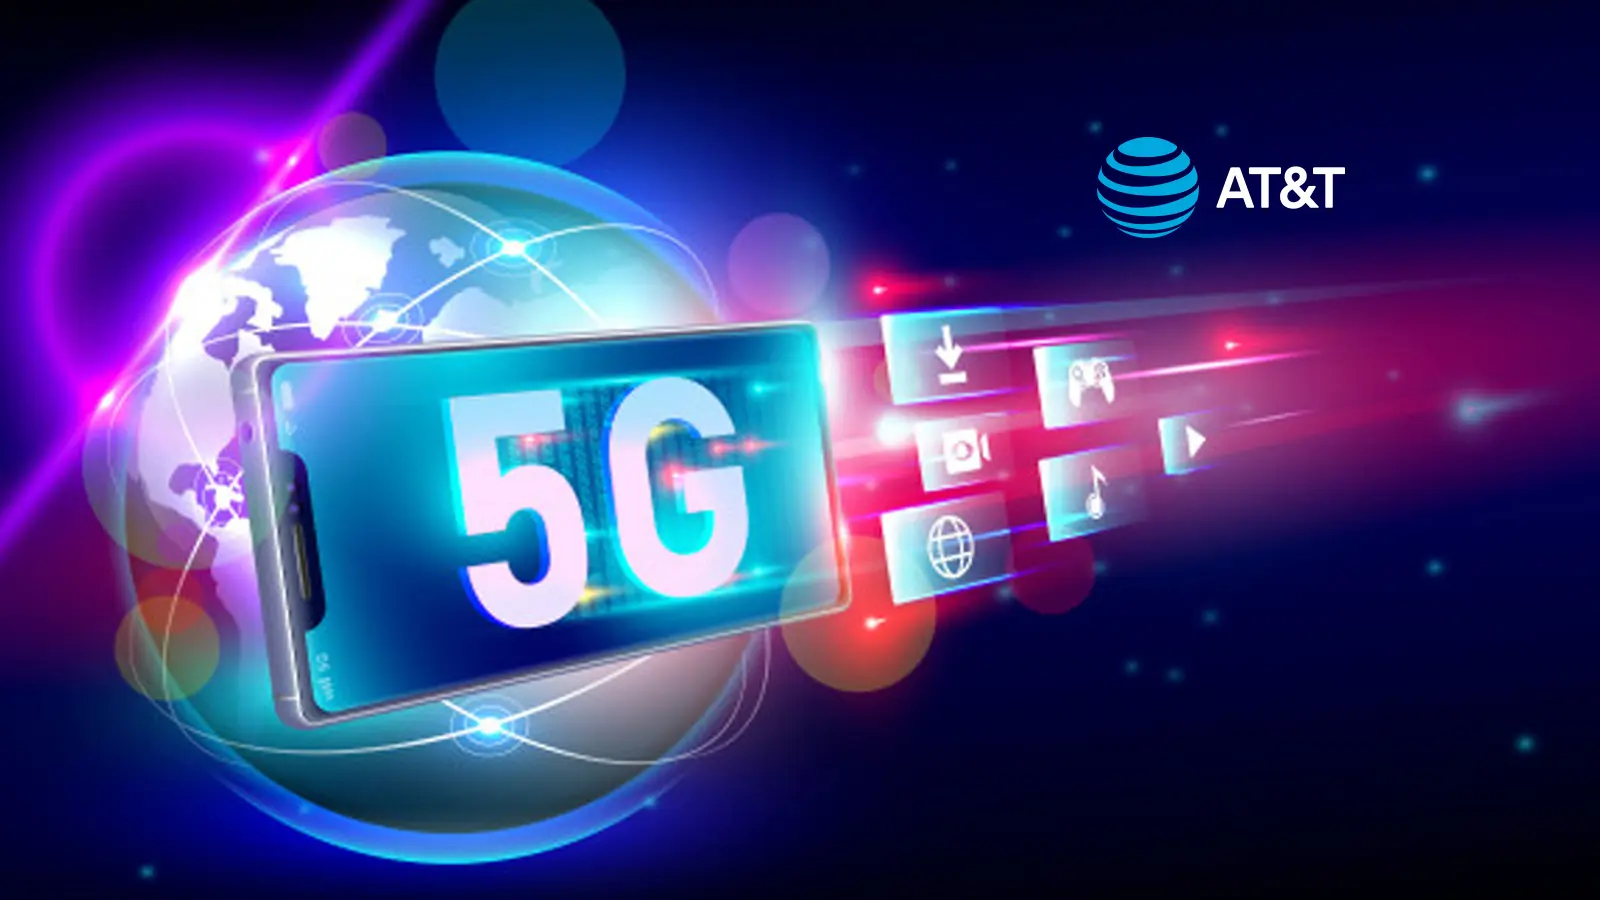 AT&T 5G alcanza 1,537 Mbps de velocidad en las pruebas reales